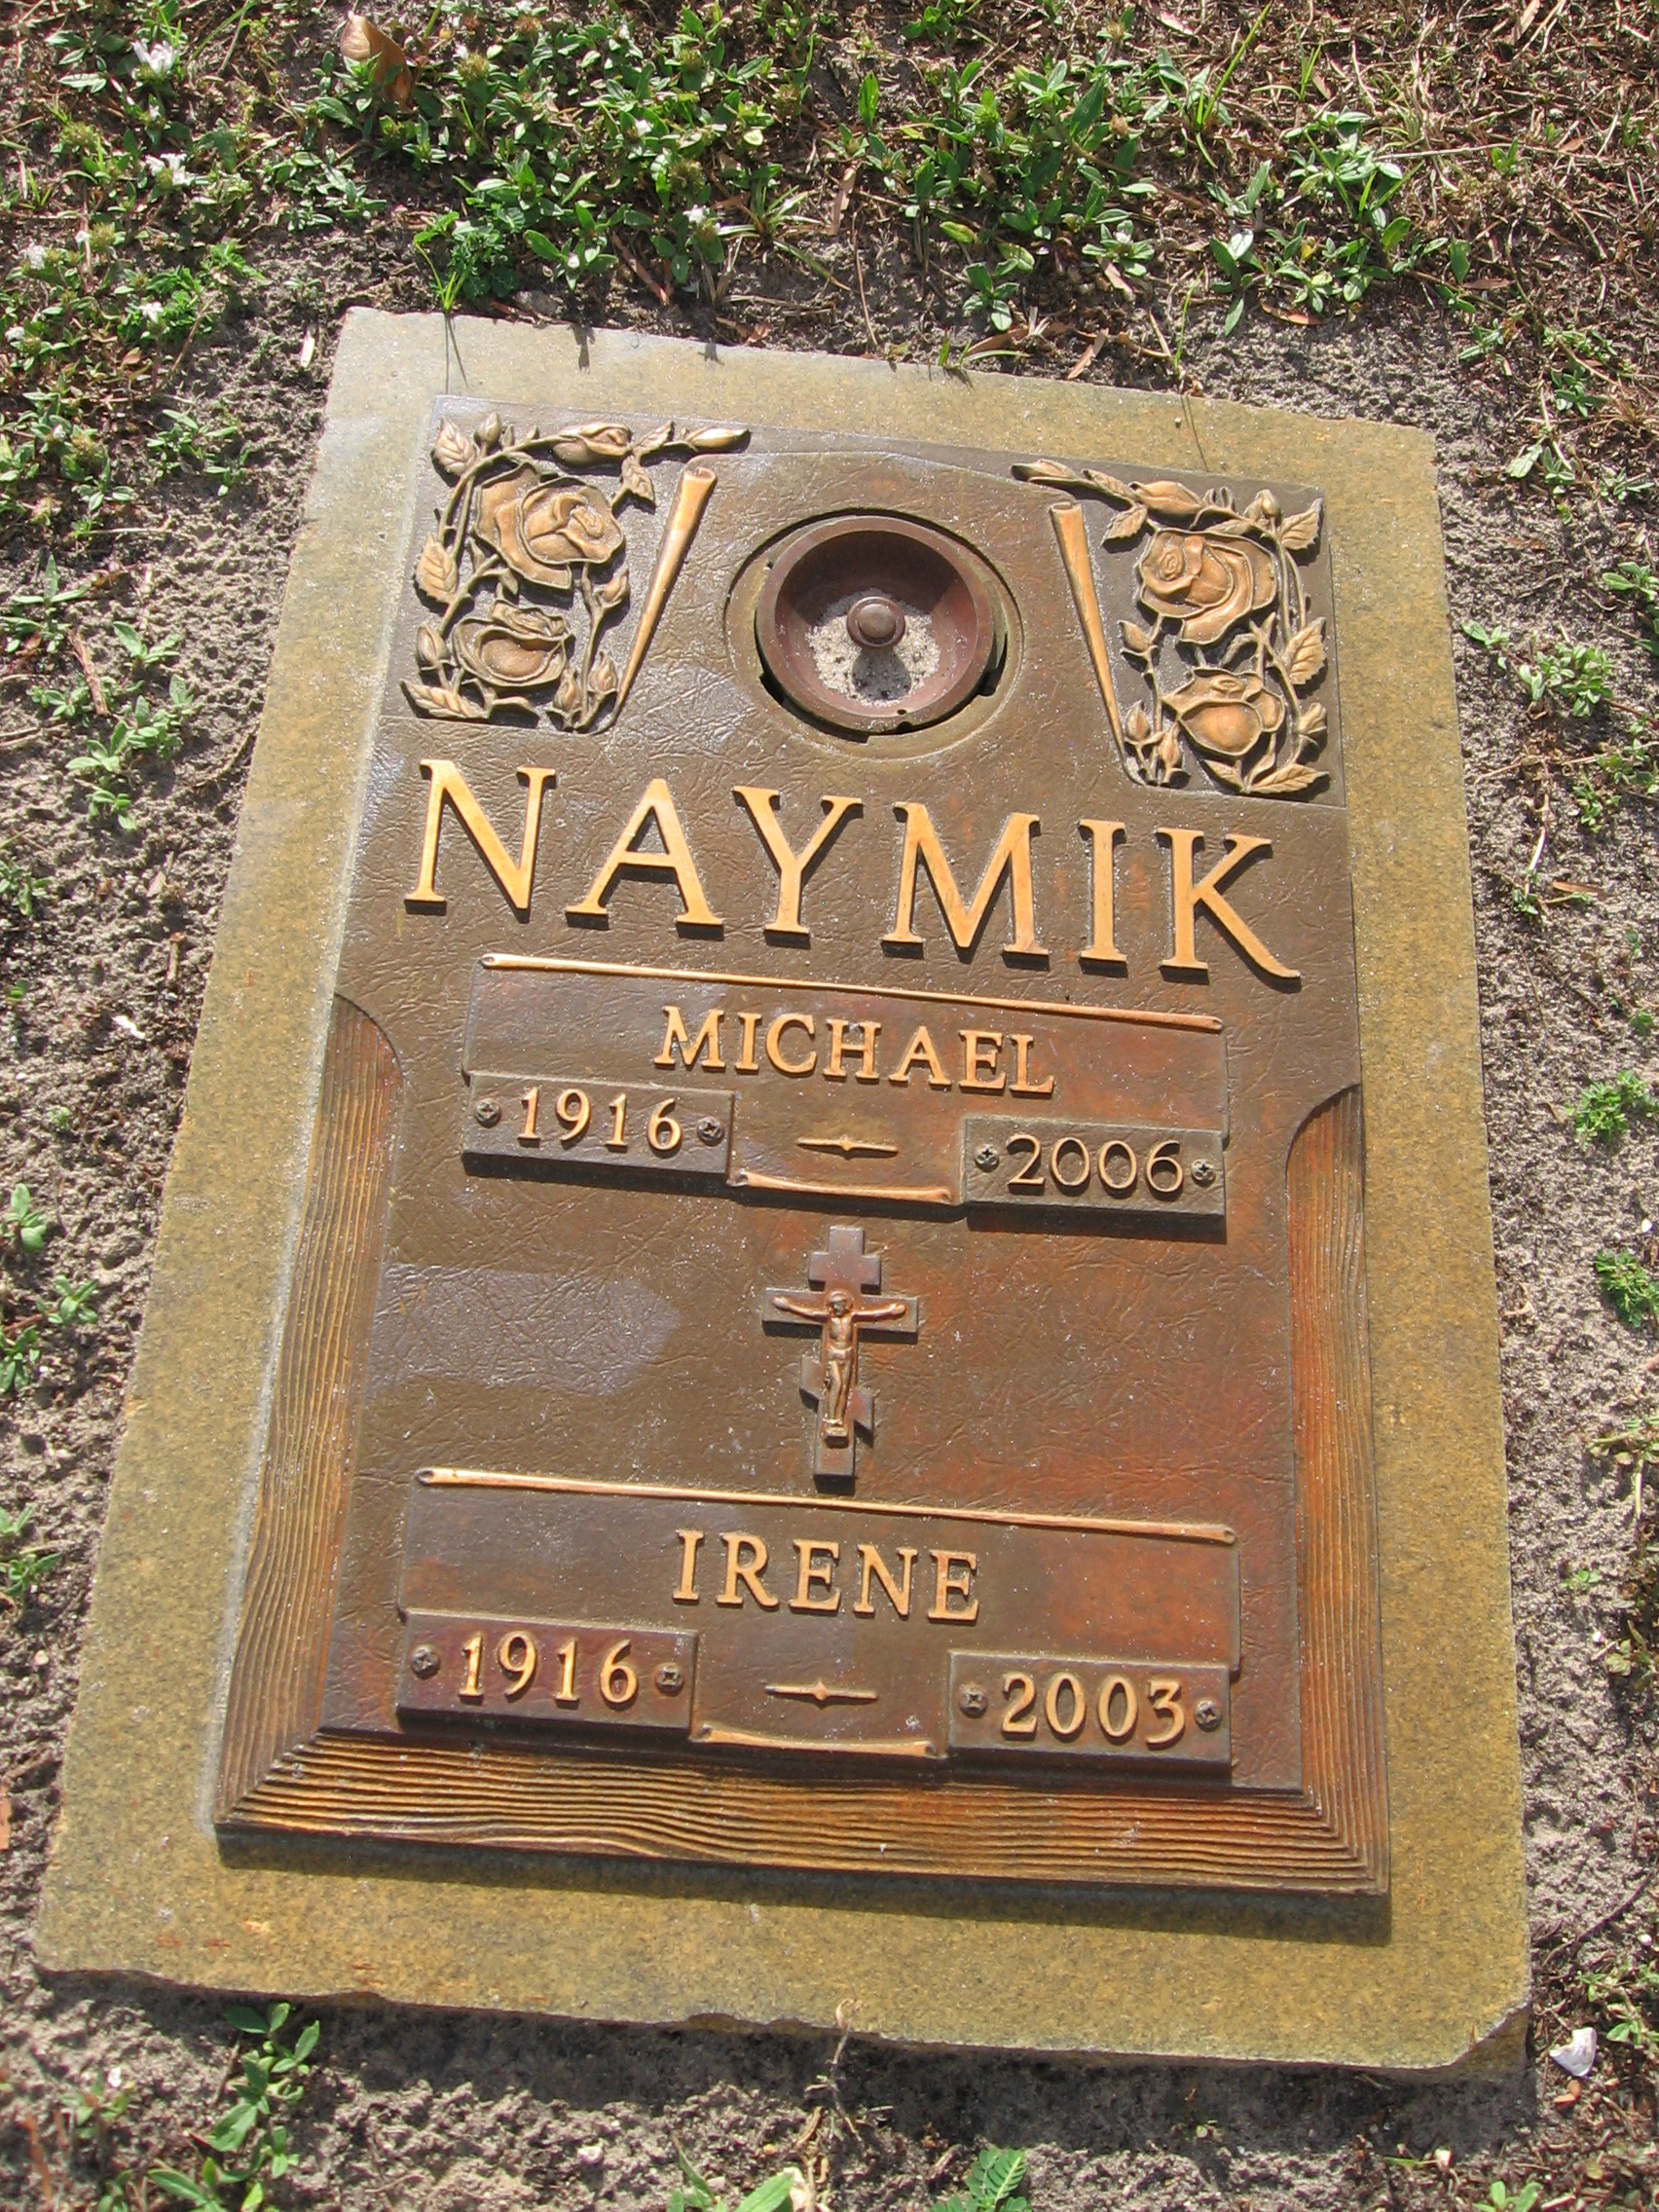 Michael Naymik